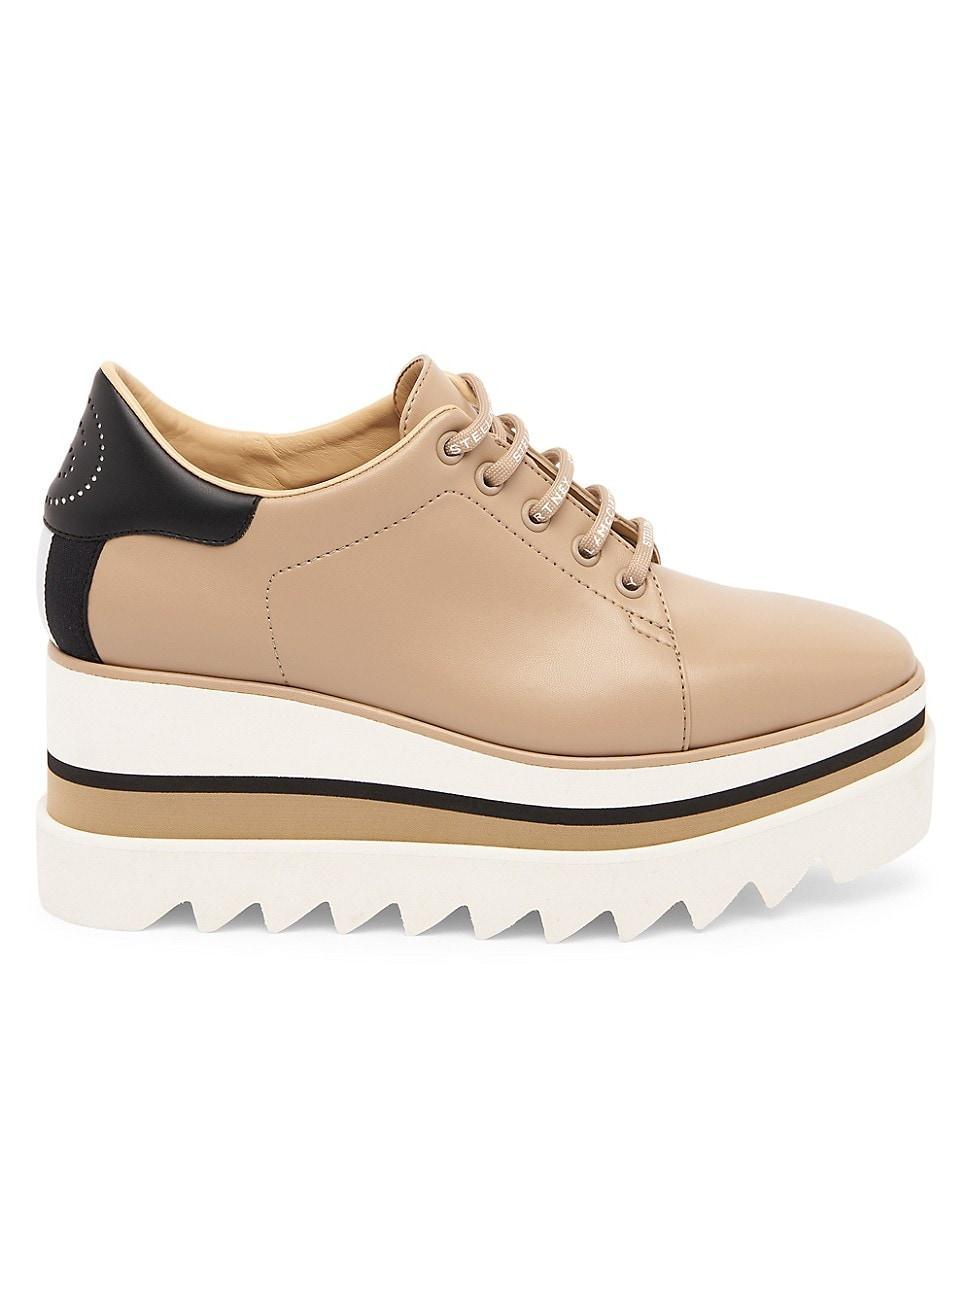 Stella McCartney Sneak-Elyse Platform Wedge Sneaker Product Image